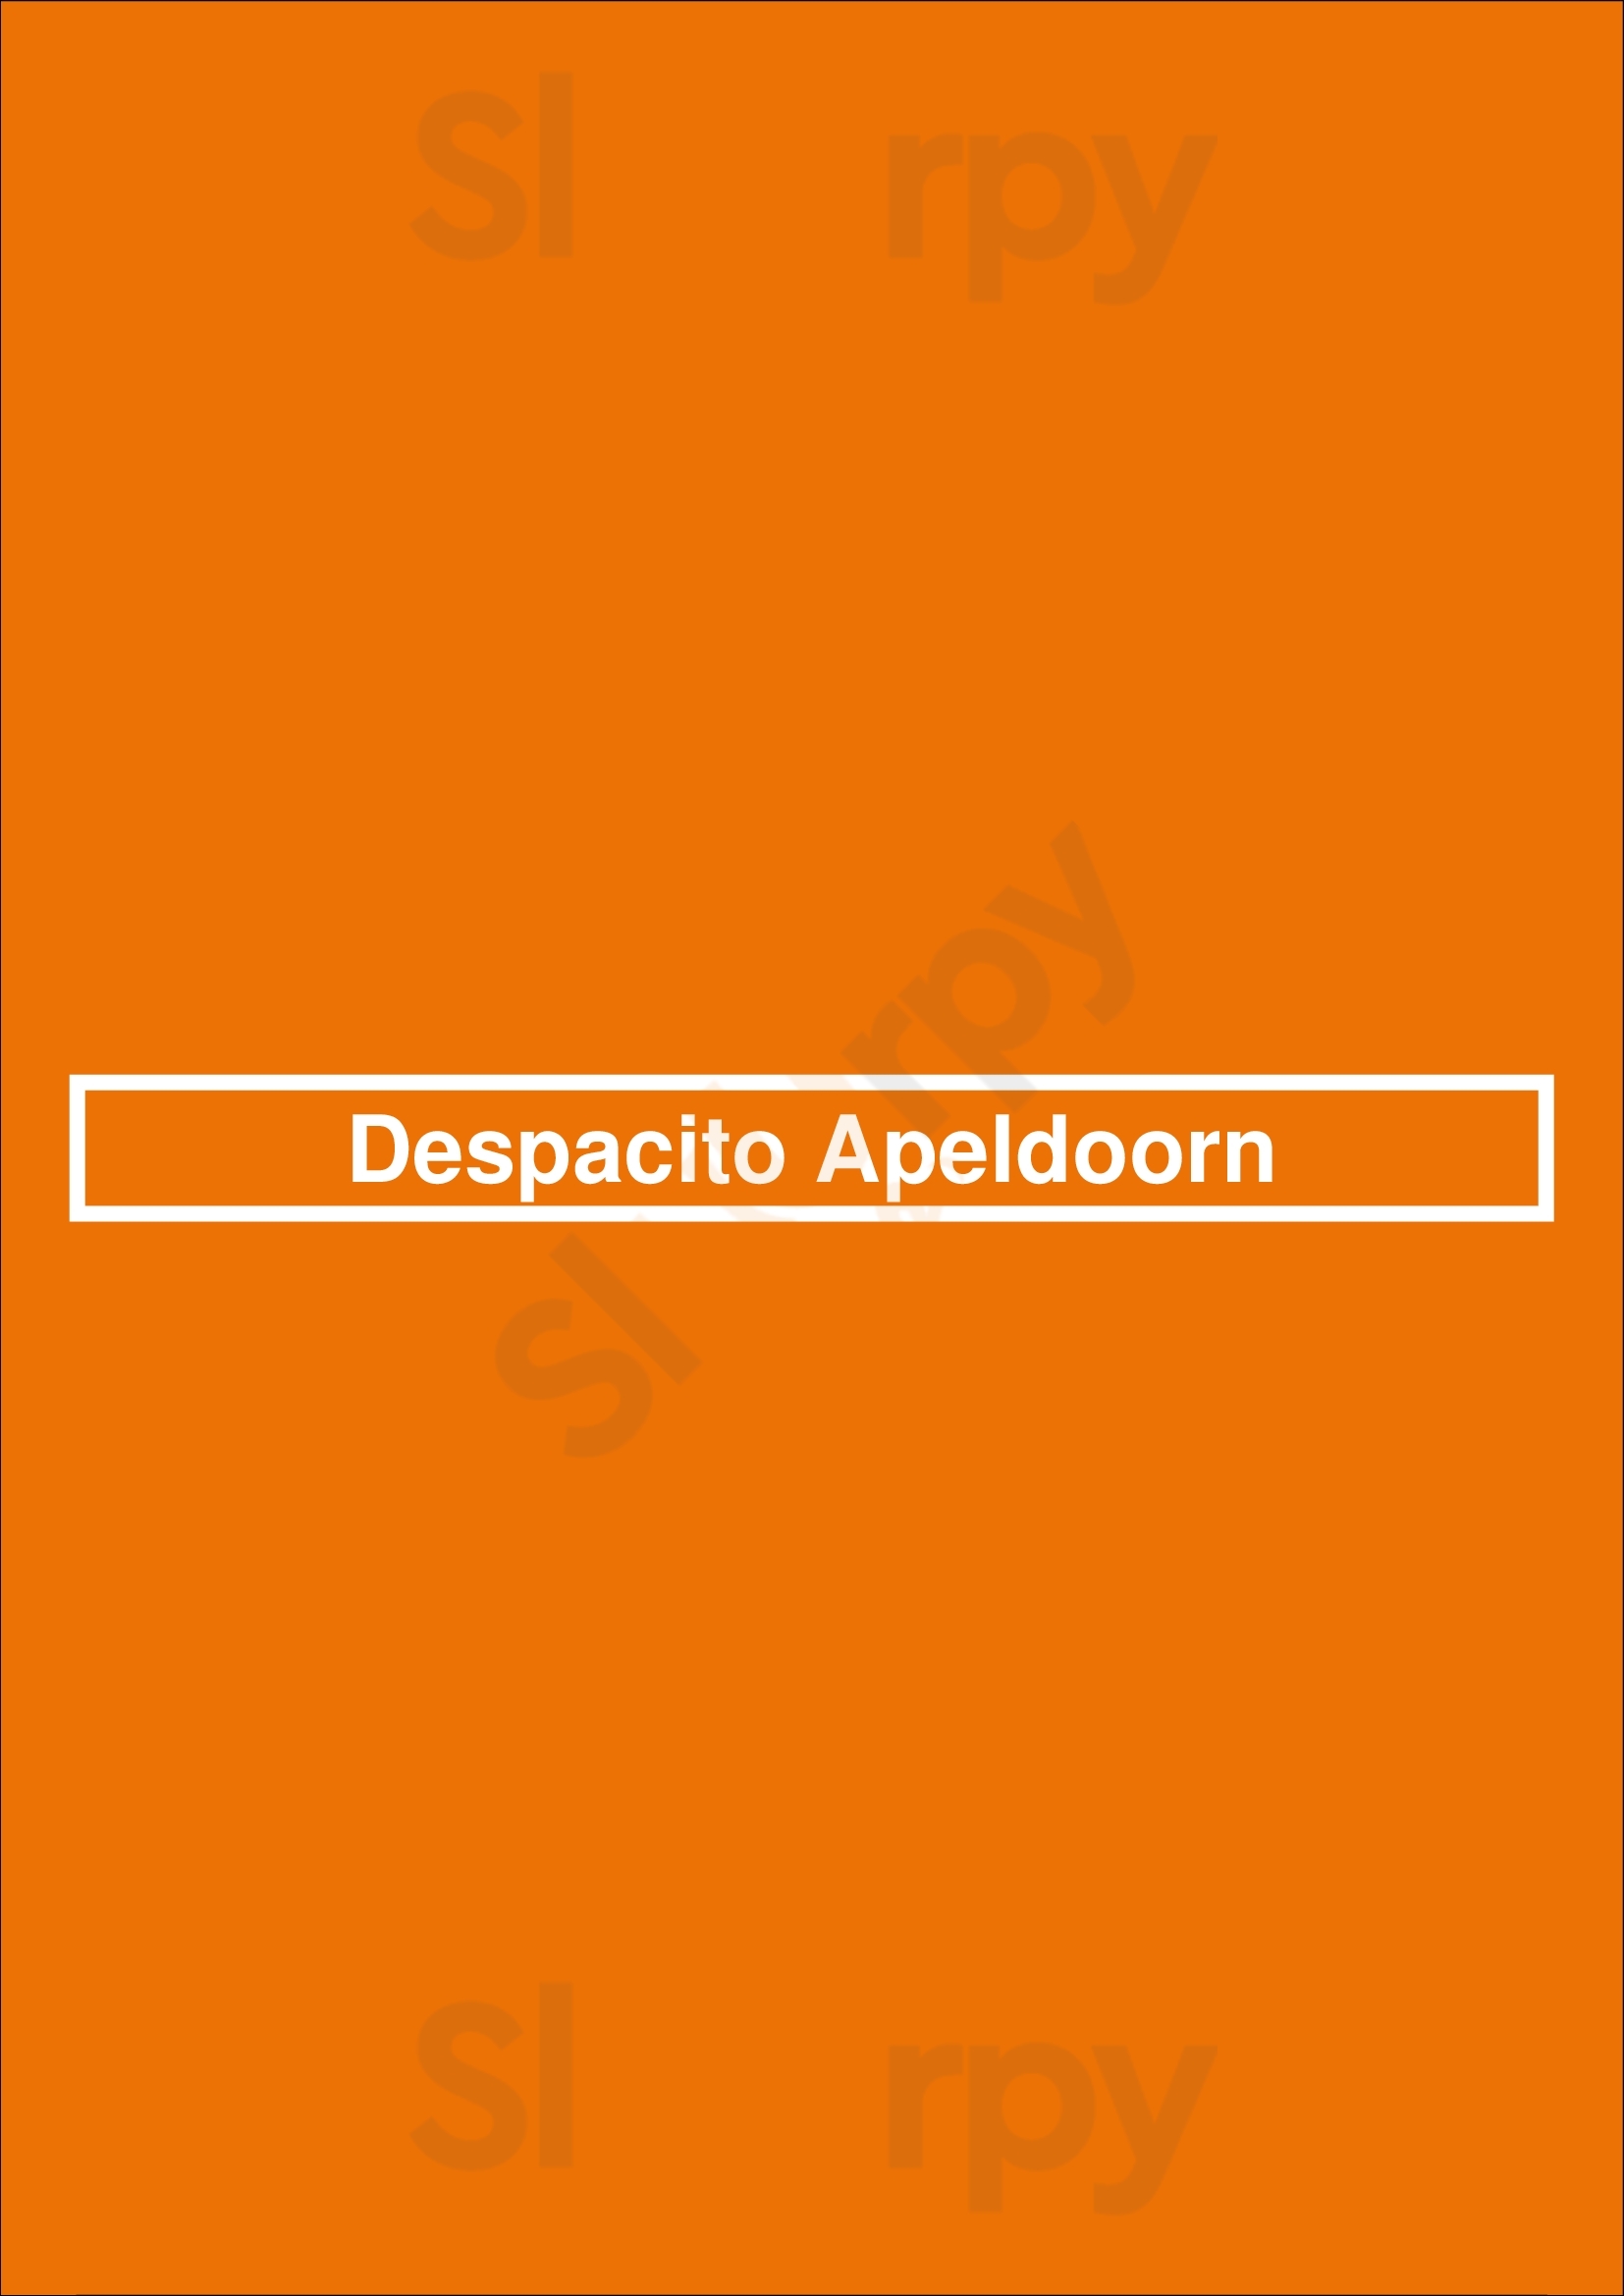 Despacito Apeldoorn Apeldoorn Menu - 1